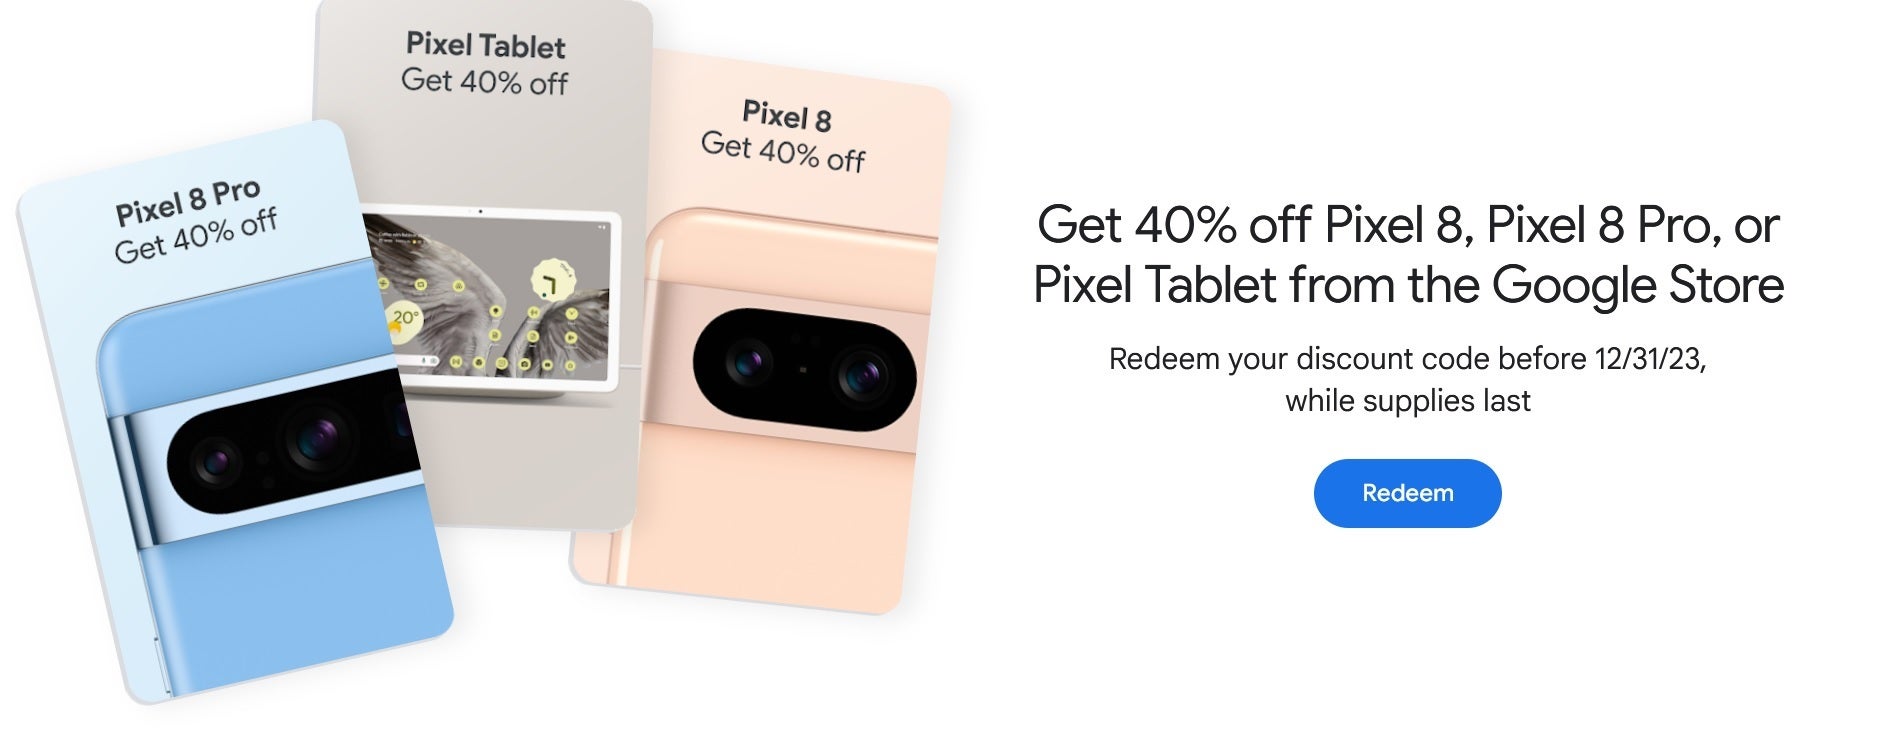 وفّر 40% على Pixel 8 أو Pixel 8 Pro أو Pixel Tablet عندما تكون عضوًا ذهبيًا أو بلاتينيًا أو ماسيًا في Google Play Points.  يمكن للأعضاء في Google Play Points Gold أو أعلى الحصول على خصم بنسبة 40% على سلسلة Pixel 8 وPixel Tablet